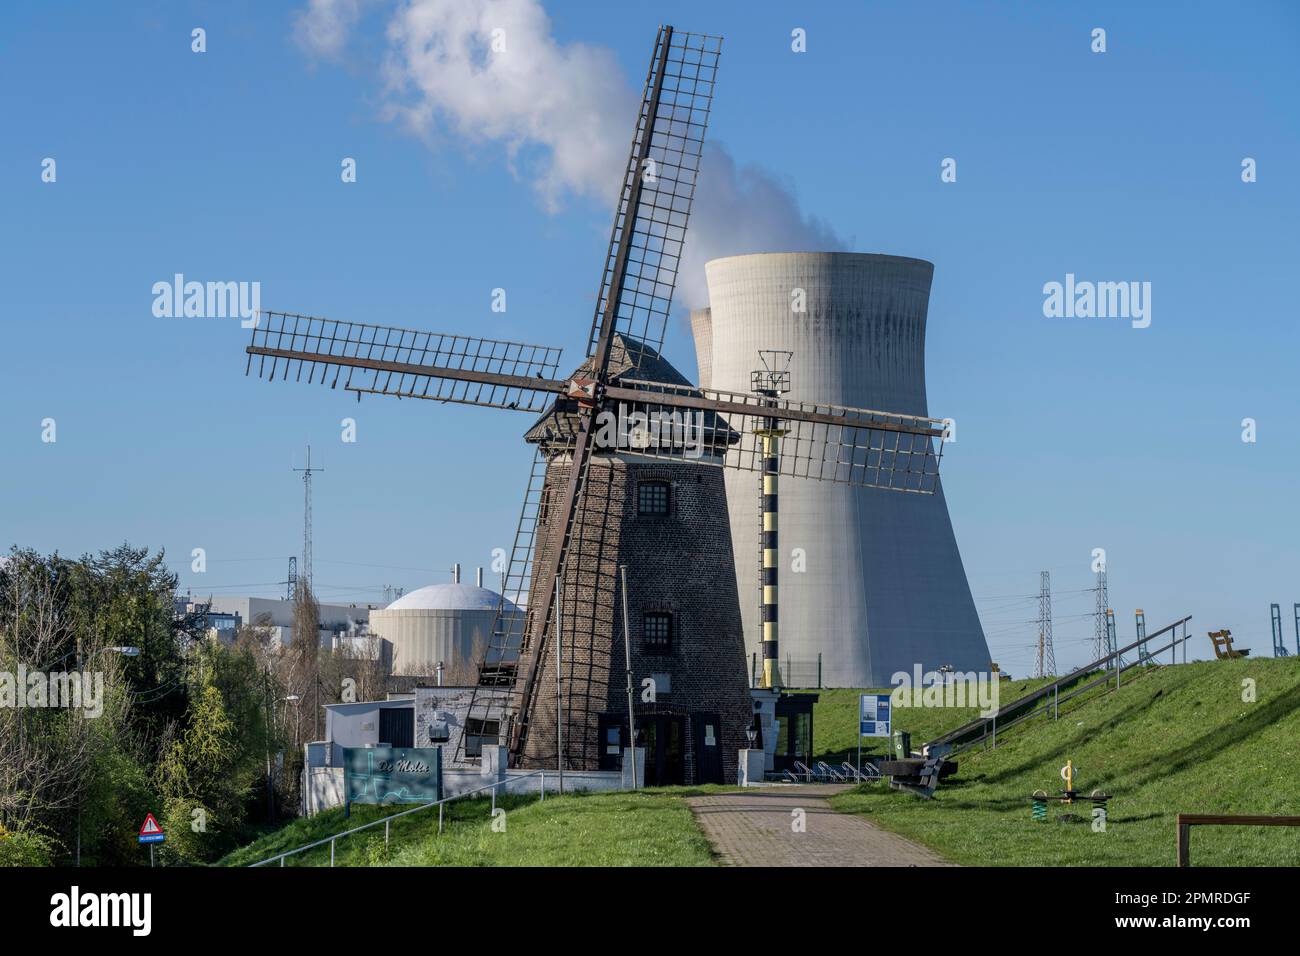 Das Kernkraftwerk Doel am Fluss Schelde, eines von zwei Kernkraftwerken in Belgien, besteht aus drei Betriebseinheiten, die jeweils mit einem Pressur ausgestattet sind Stockfoto